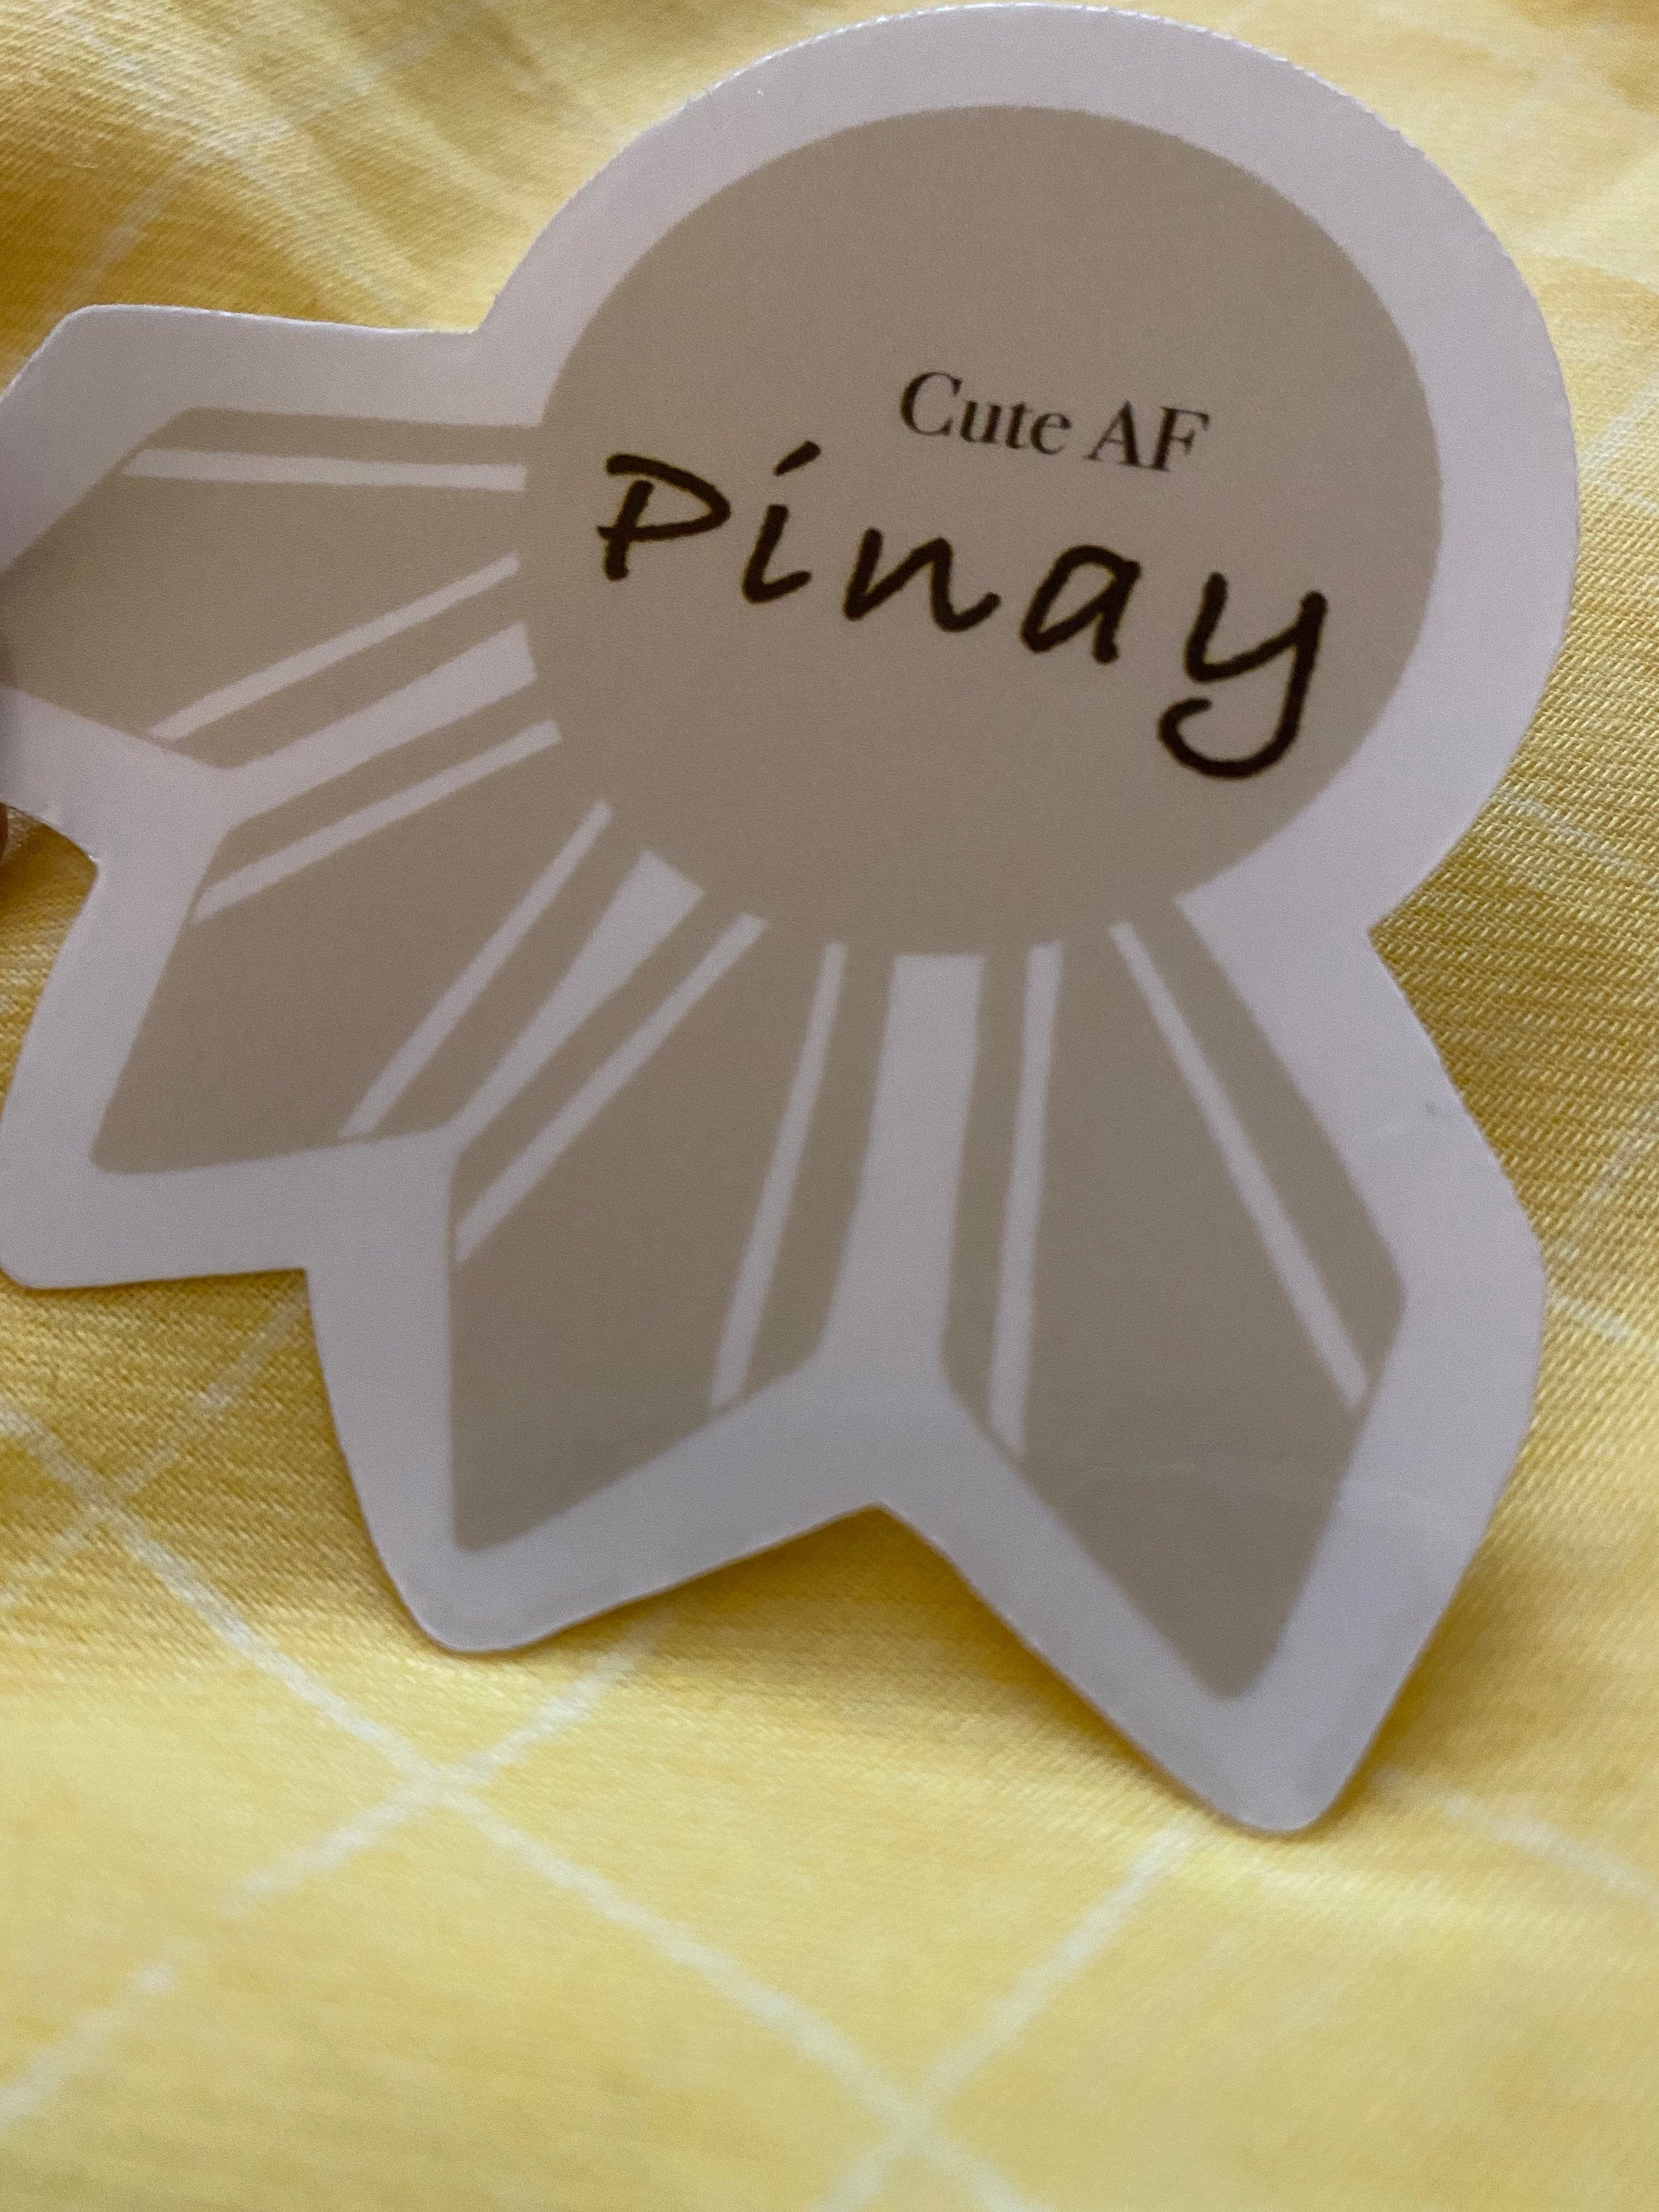 Mie Makes Cute AF Pinay Sticker, Filipina Sticker, Laptop Sticker, Hydroflask Sticker, Philippines Star, Pinay Sticker, Filipina, Philippines, Pinay